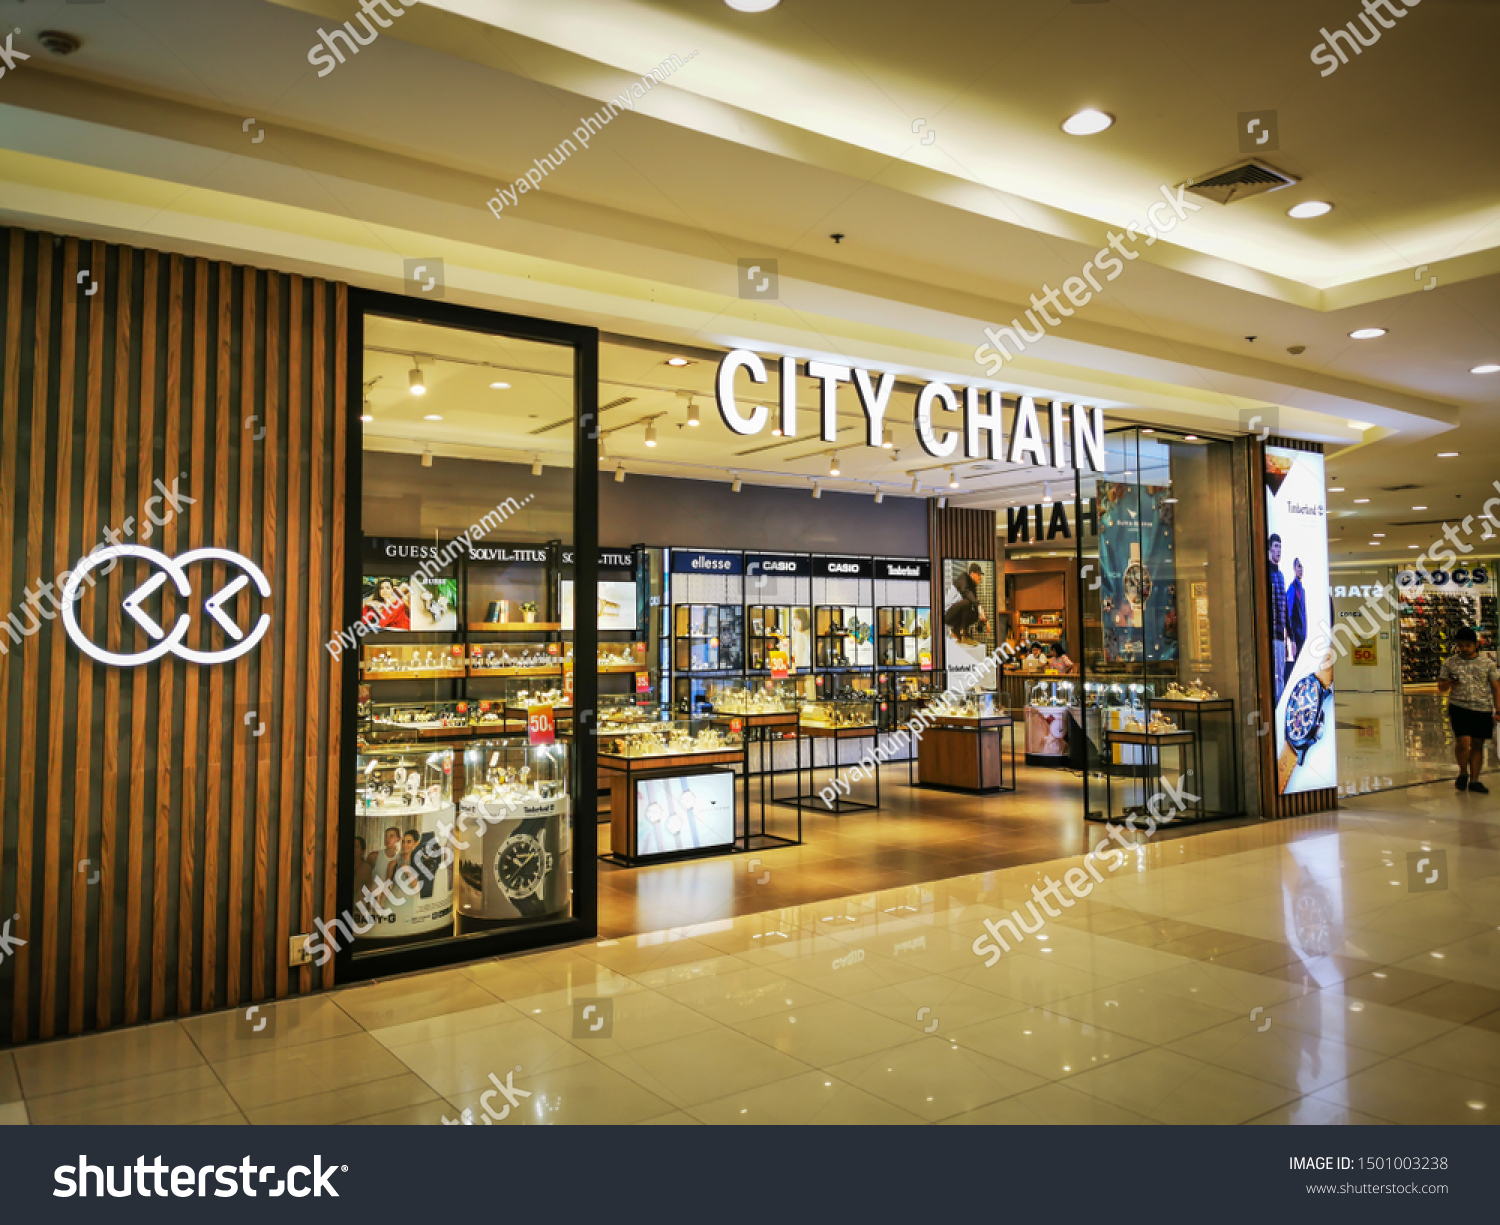 Buy Seiko Prospex Watches Online Singapore  City Chain – City Chain SG –  City Chain Singapore